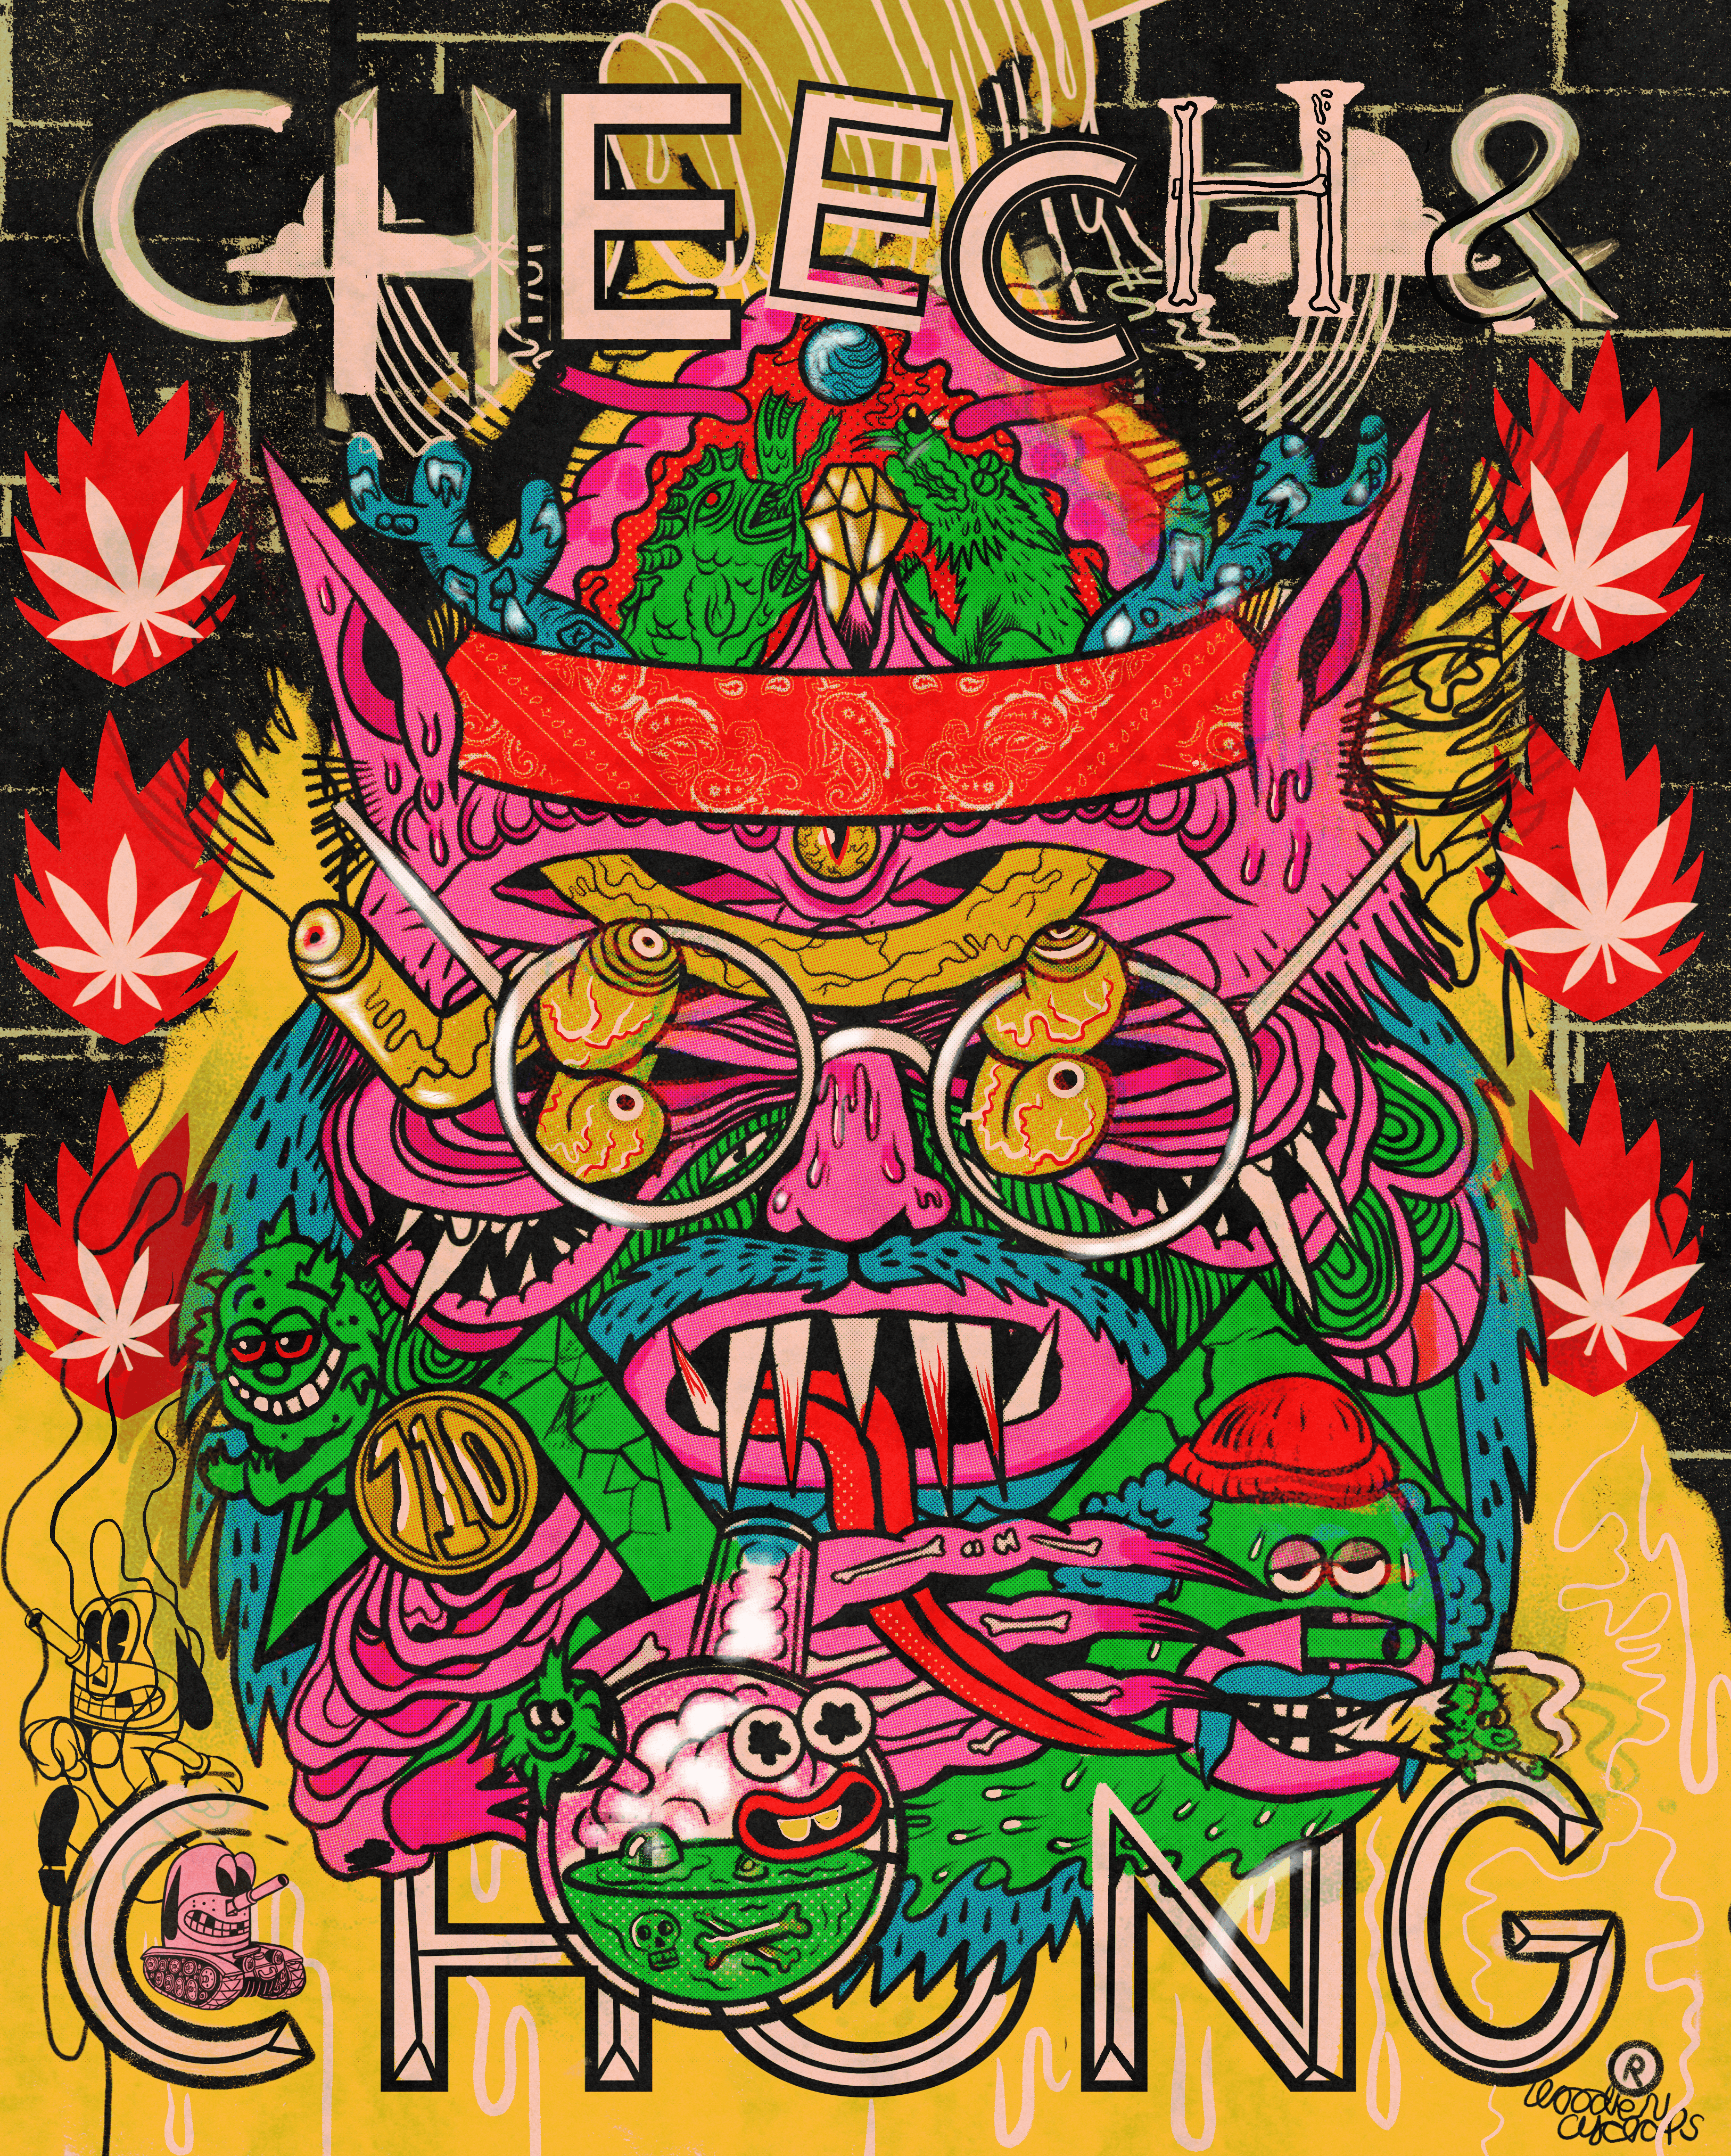 Cheech & Chong: Wooden Cyclops - 7/10/22